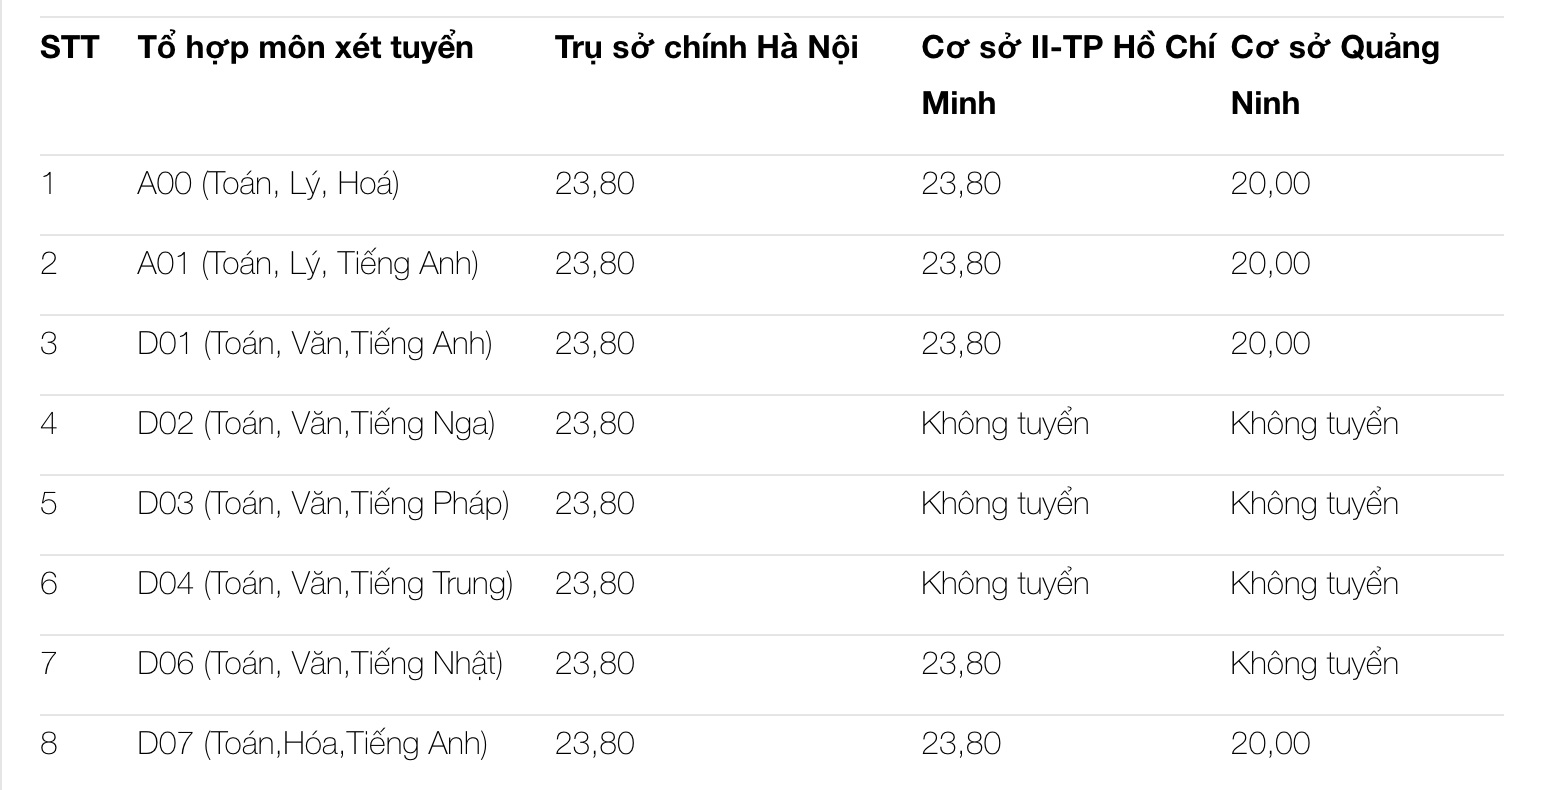 Điểm sàn các trường Đại học ở Hà Nội năm 2021 